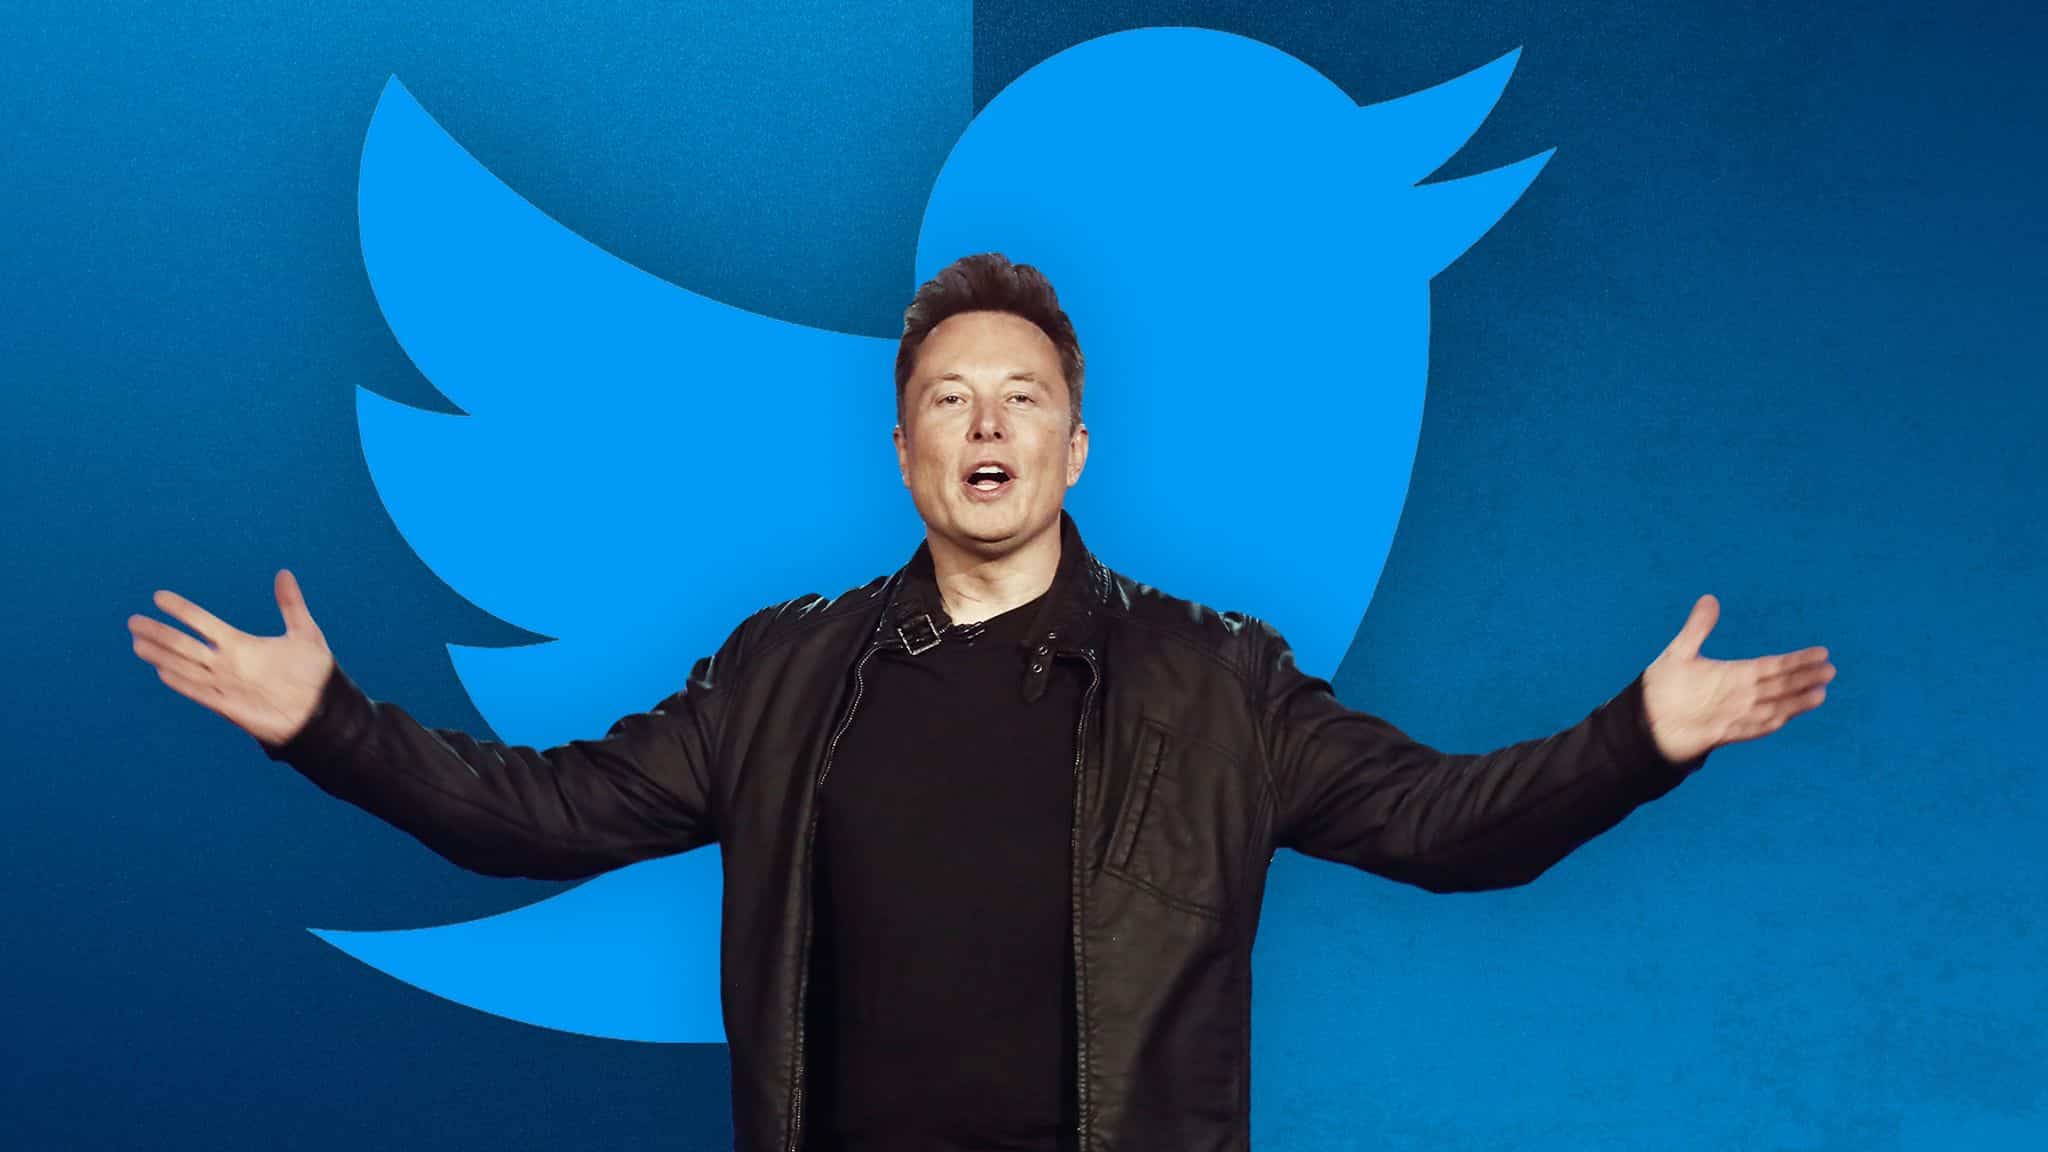 Elon Musk Twitter membresia GamersRD